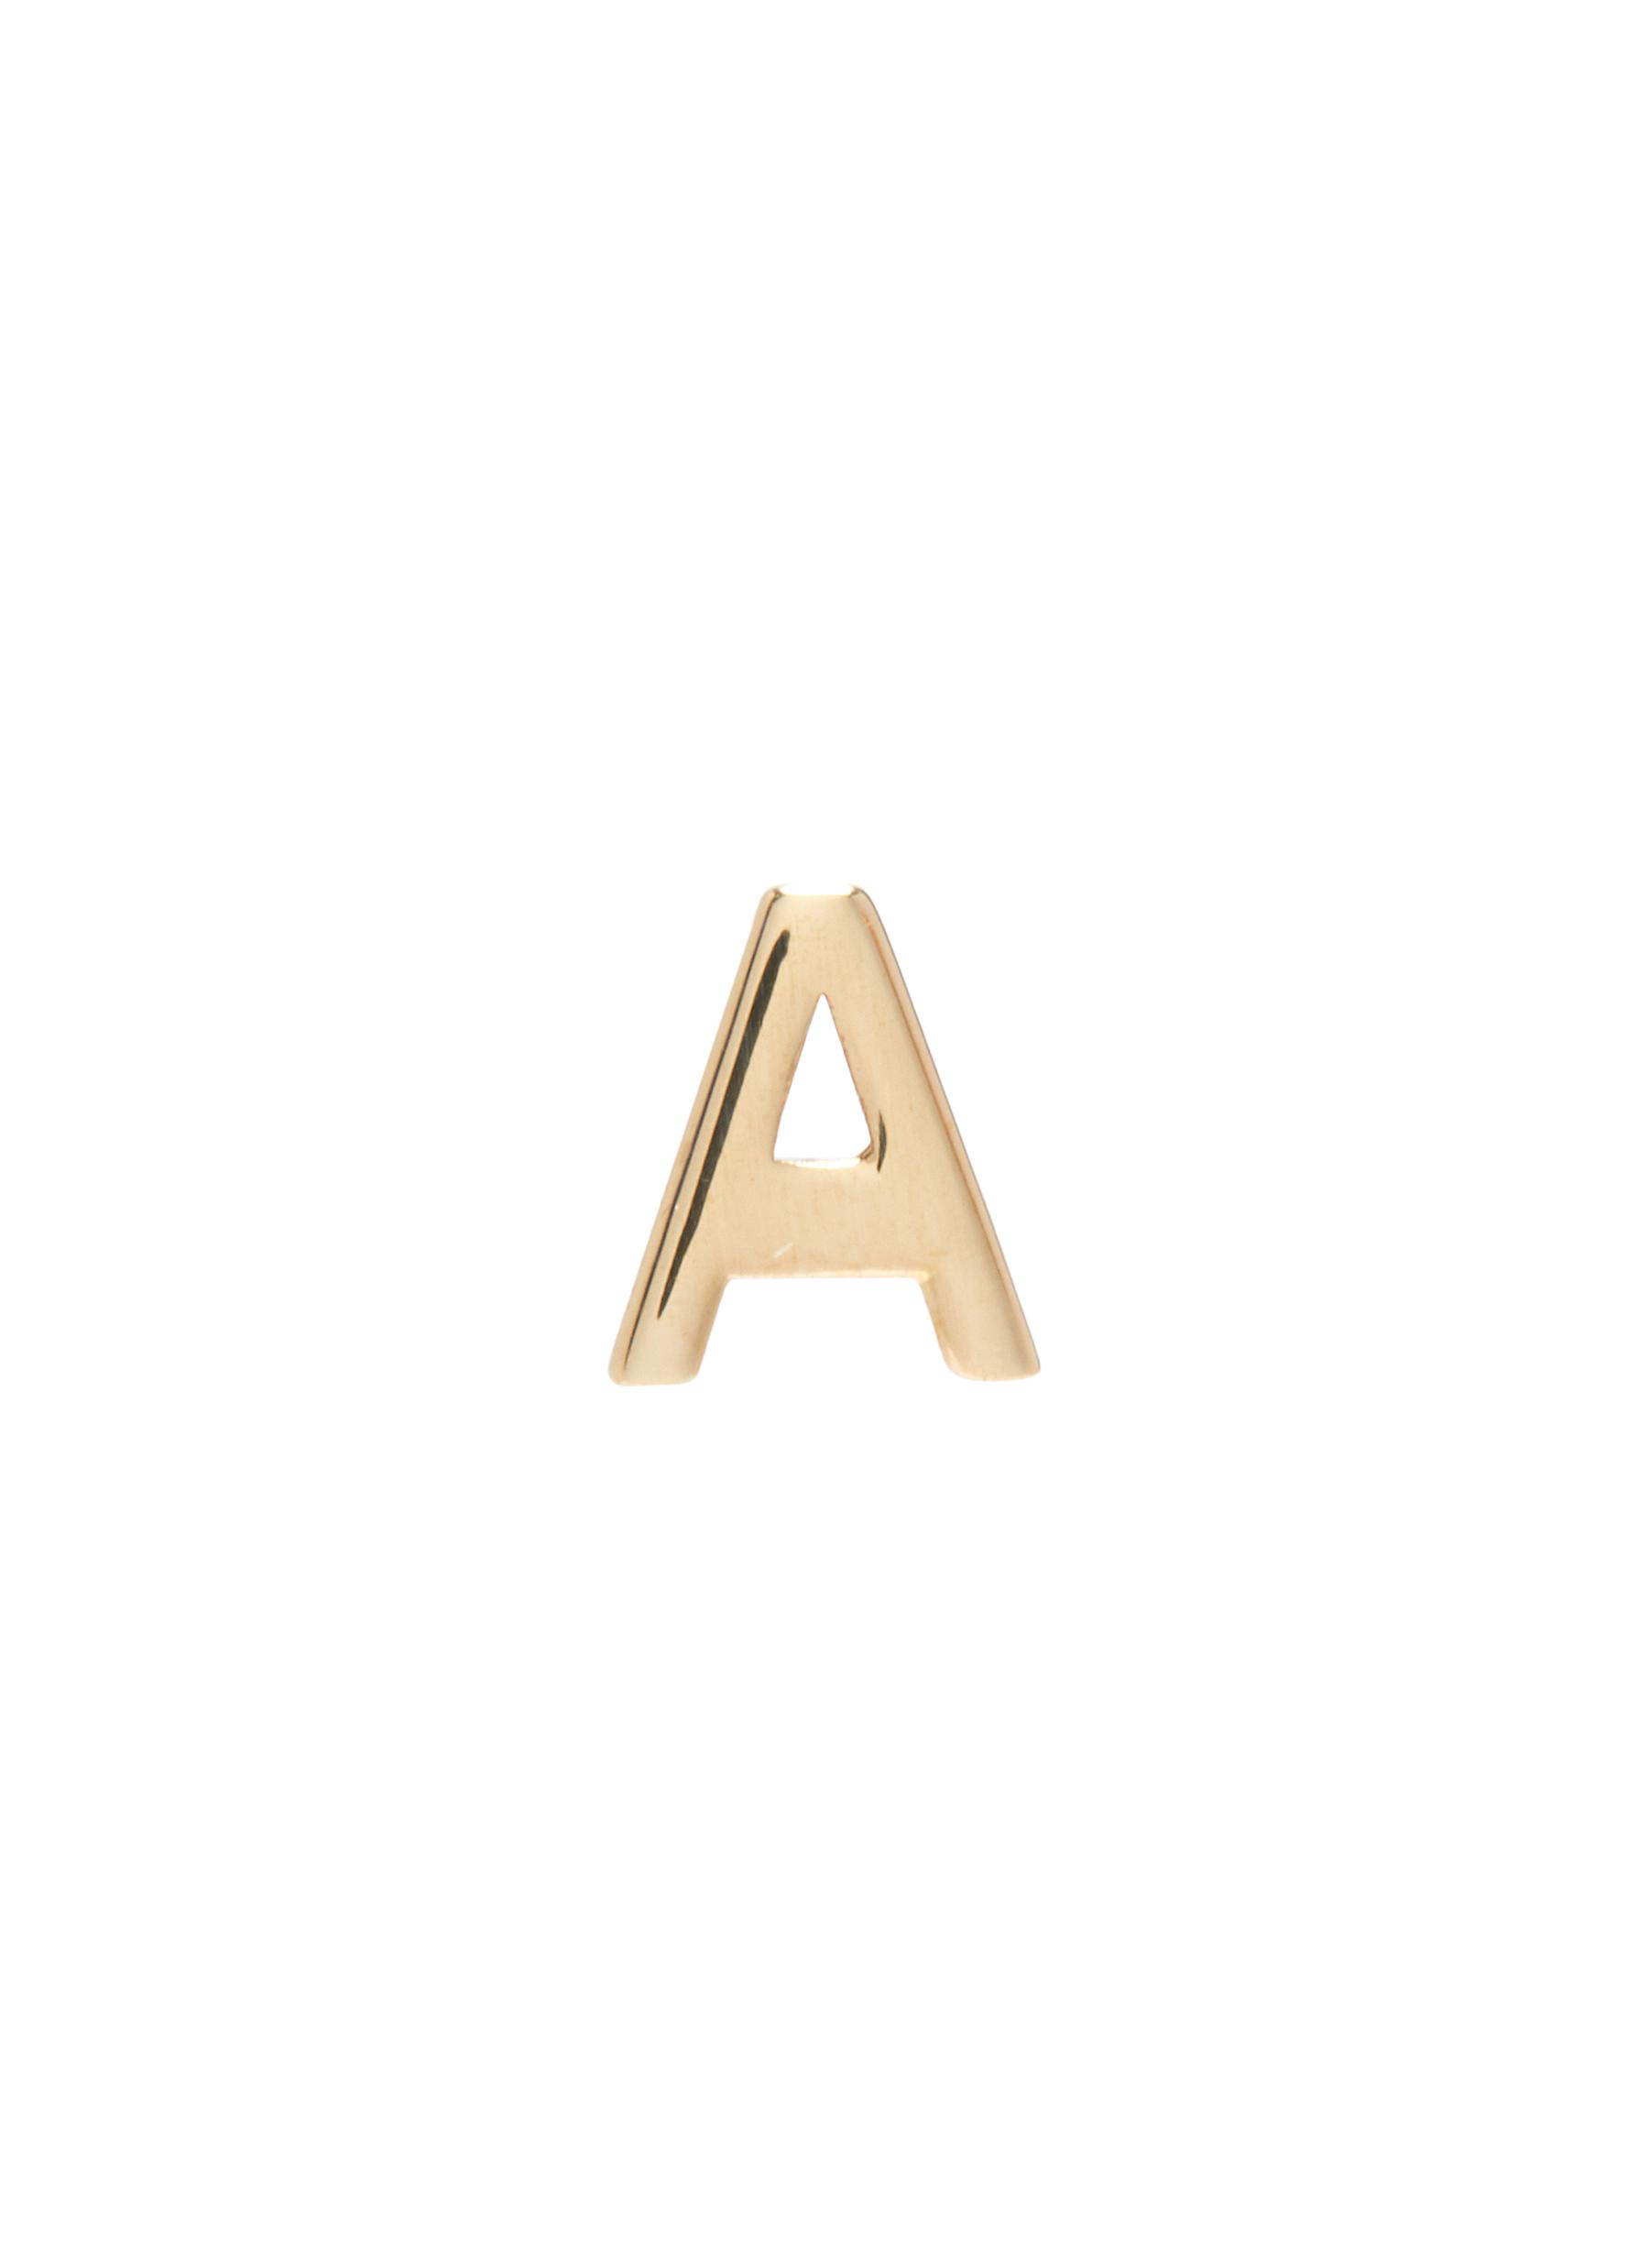 Sarah & Sebastian Petite Letter' Gold Single Earring – A